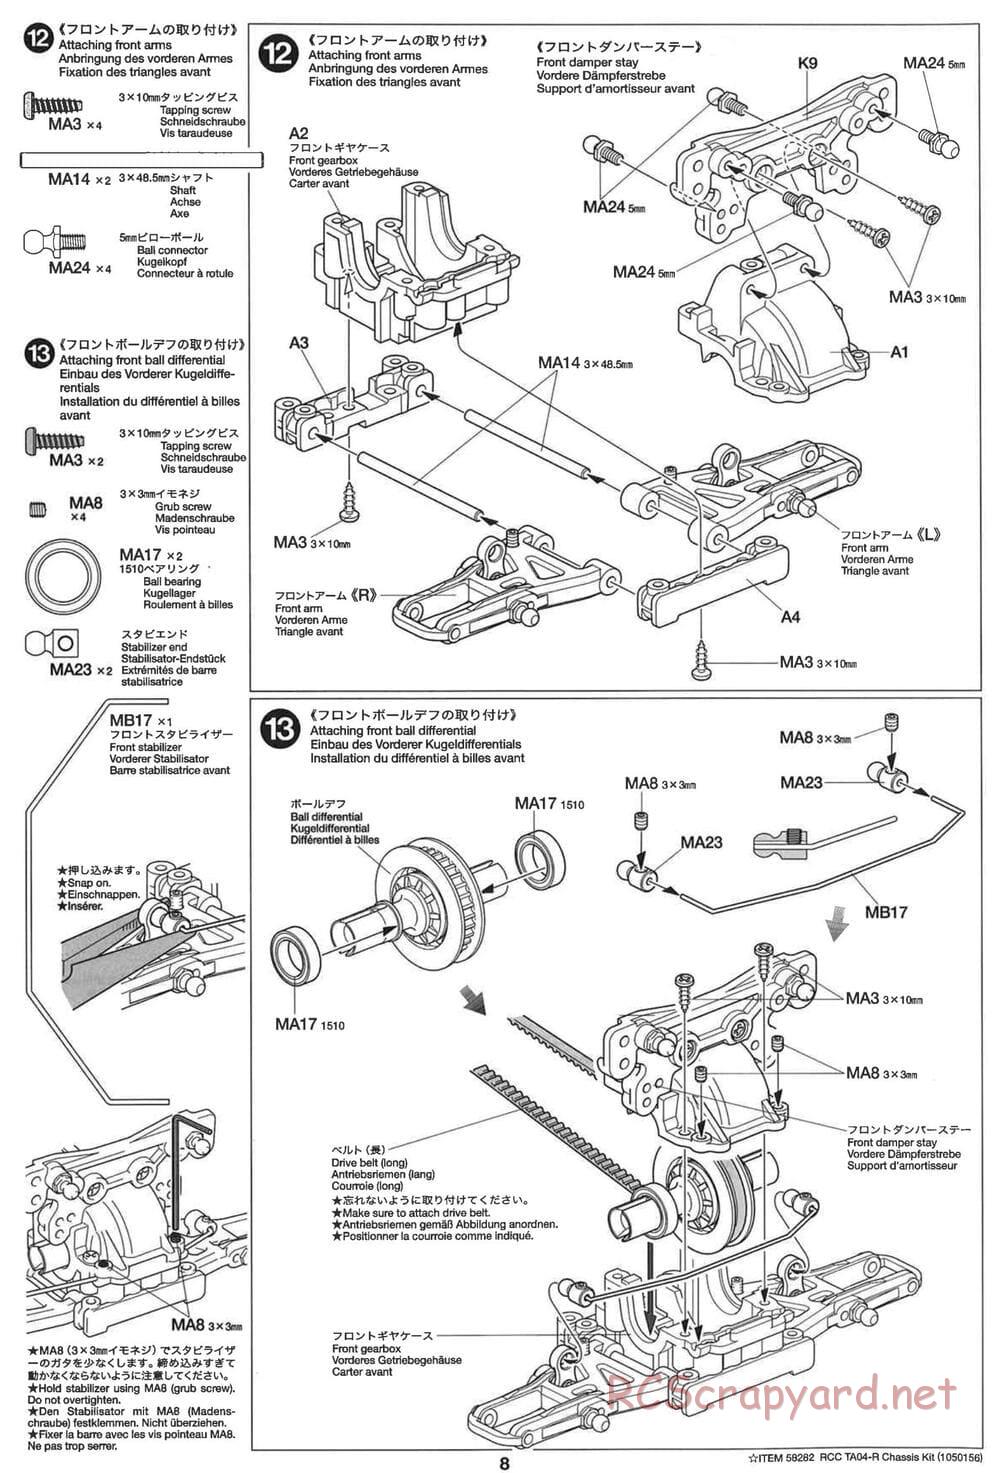 Tamiya - TA-04R Chassis - Manual - Page 8